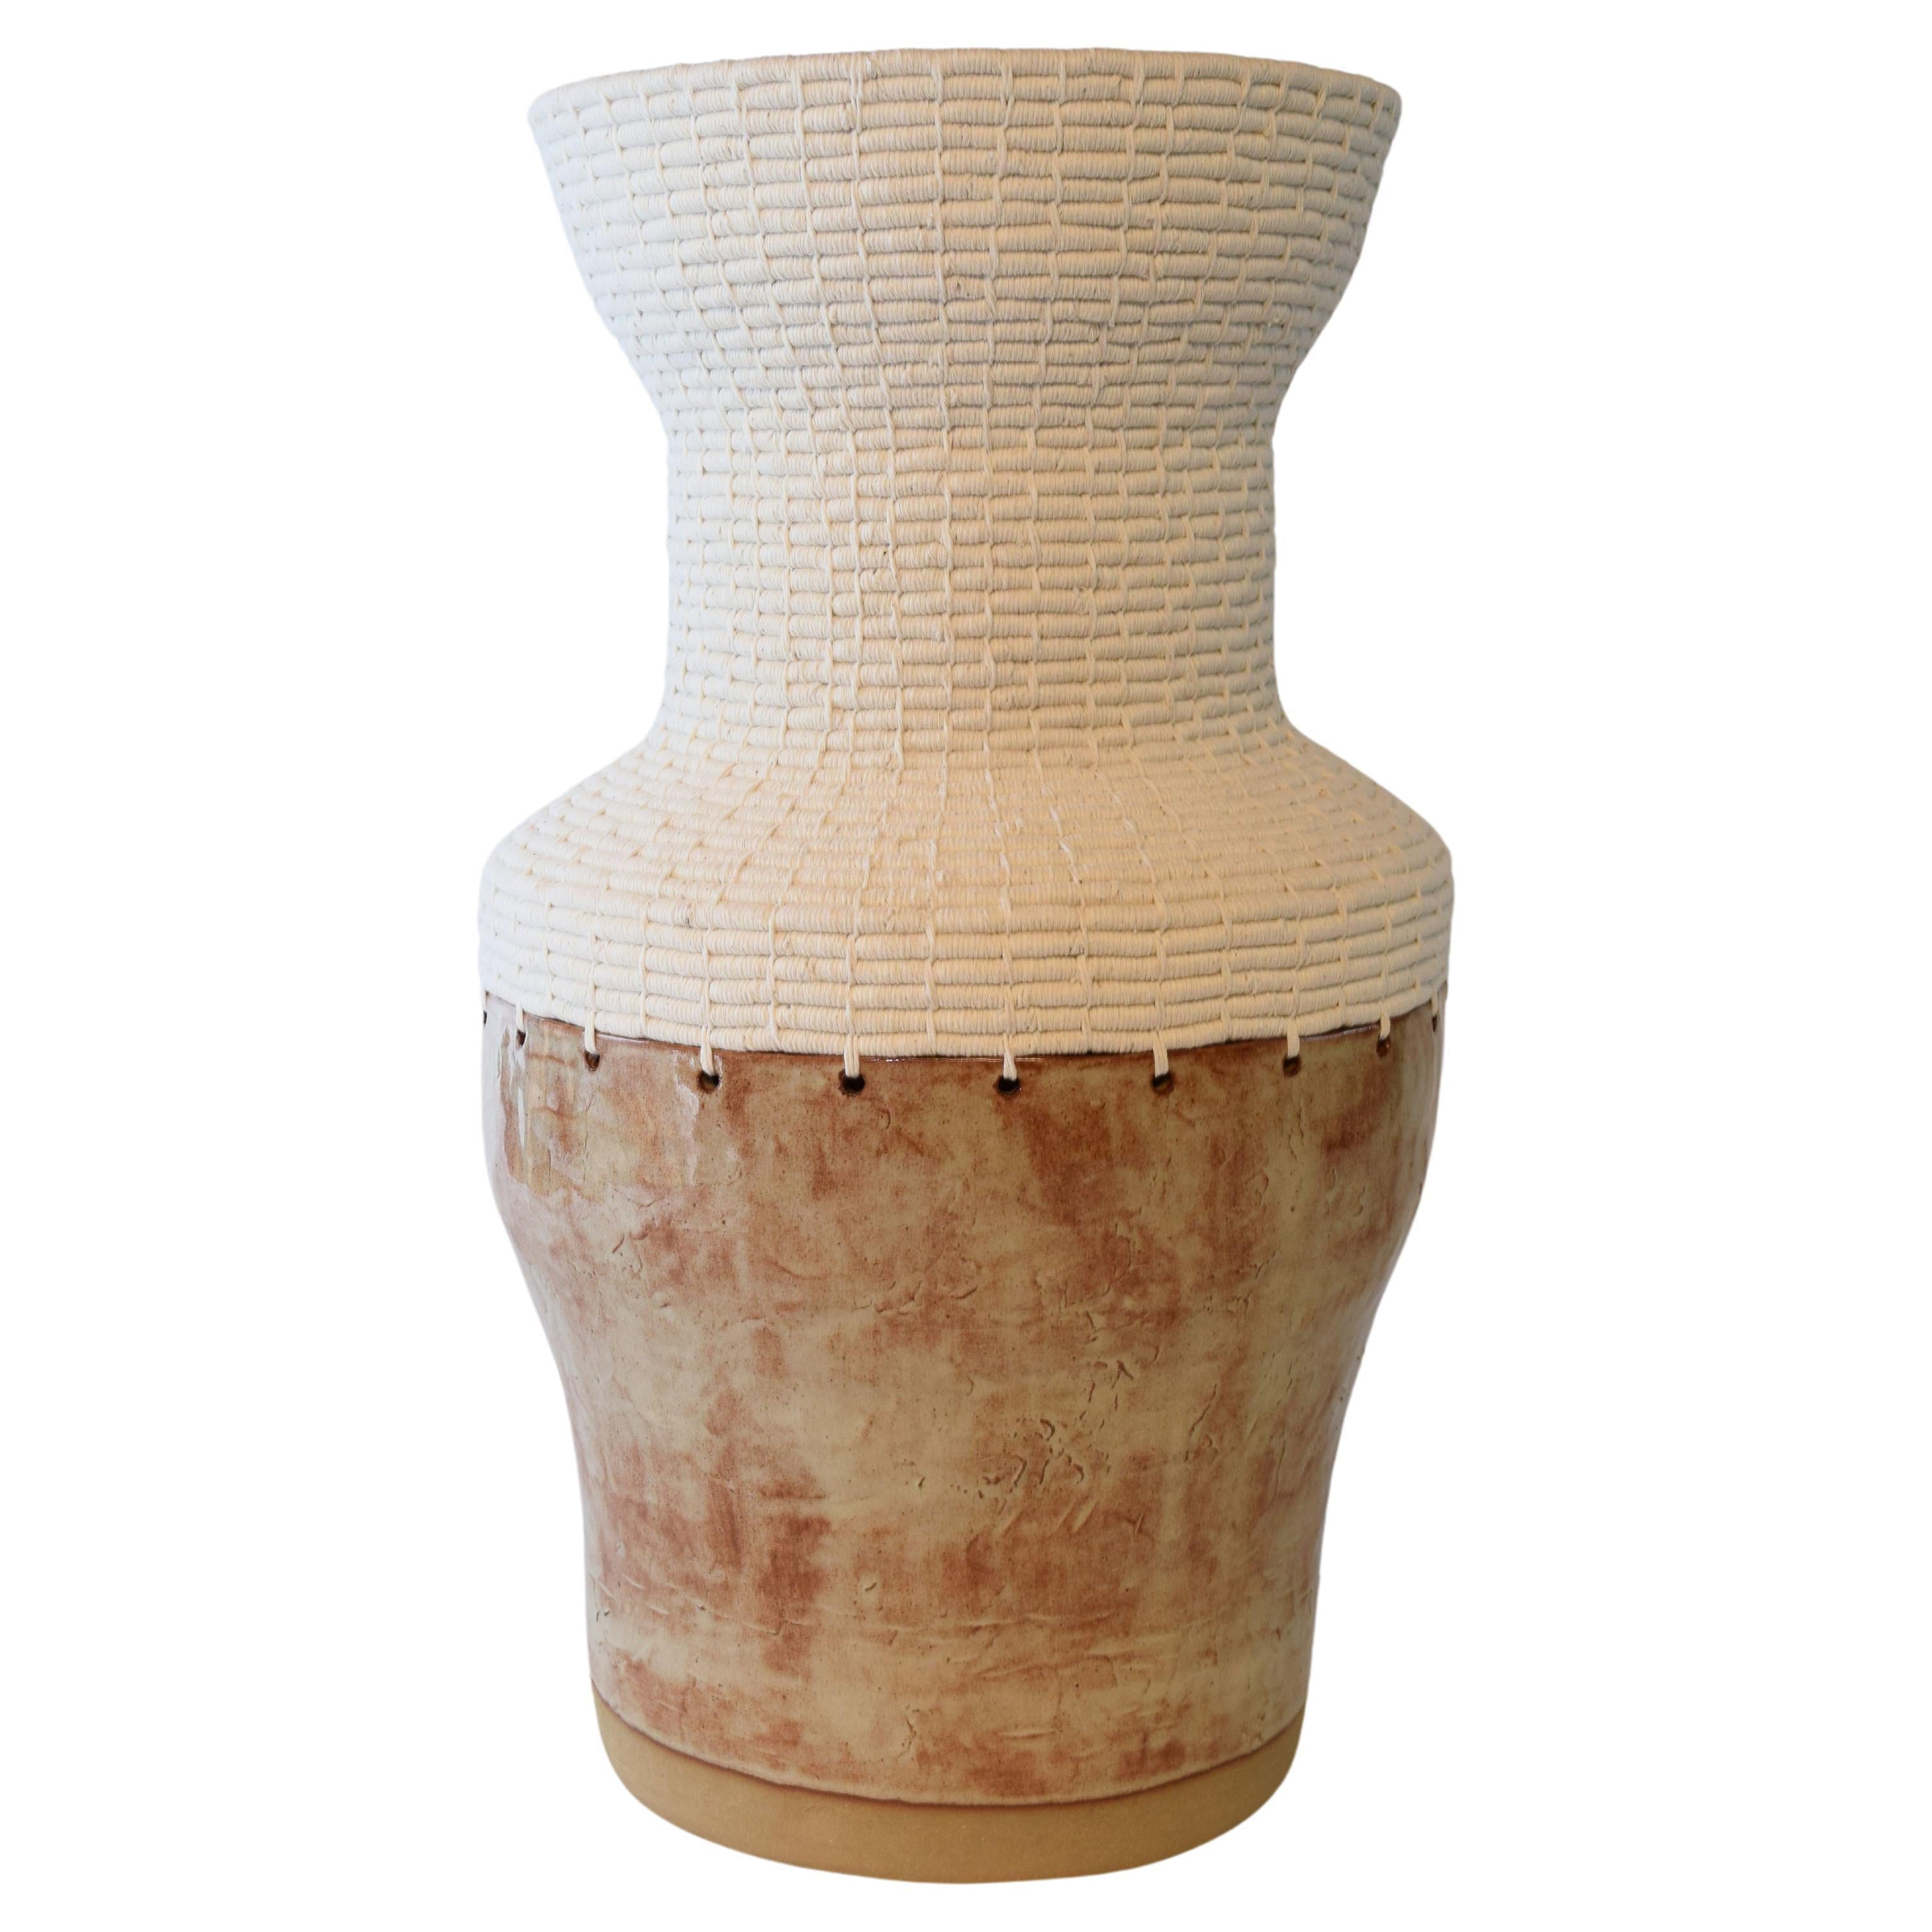 One of a Kind Ceramic & Fiber Vessel #760 - Shino Glaze, Woven White Cotton